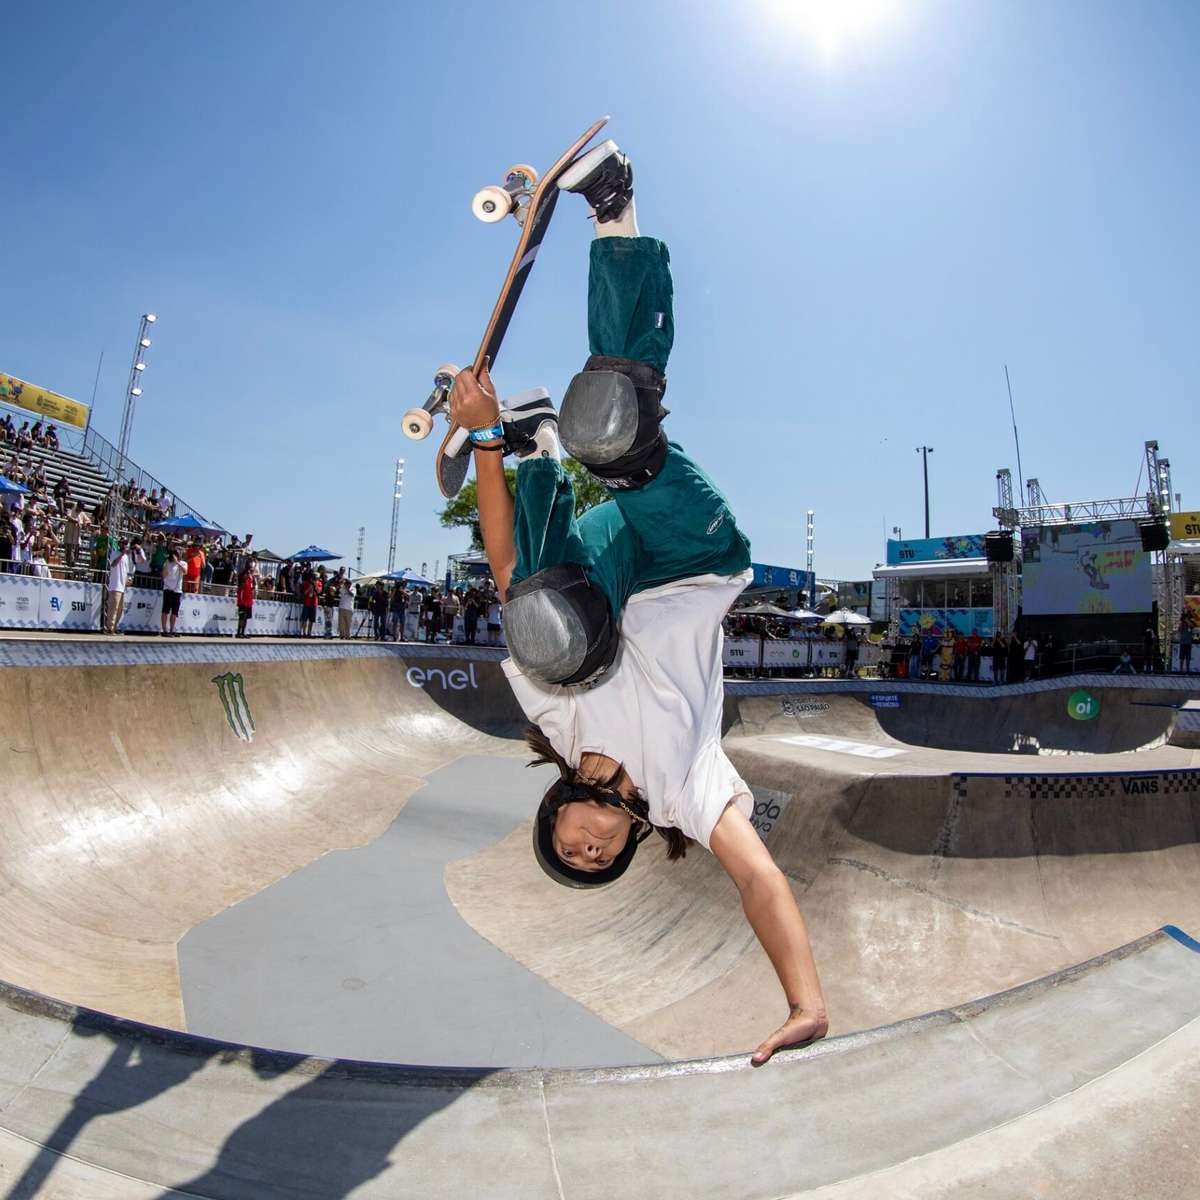 Augusto Akio busca vaga no skate park em Paris 2024: “Carrego a